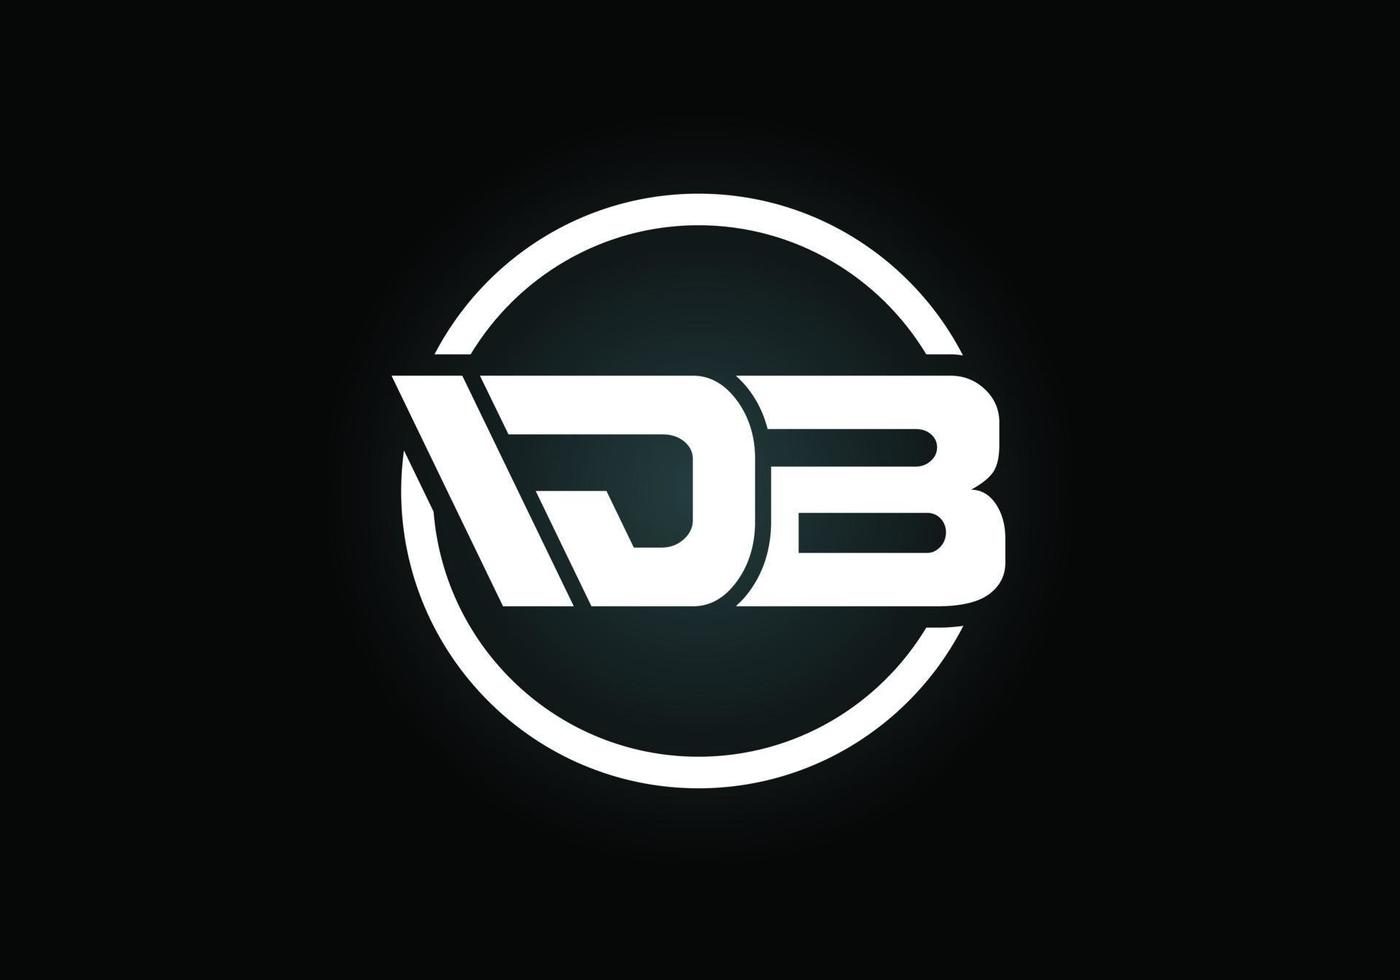 vetor de design de logotipo db letra inicial. símbolo gráfico do alfabeto para identidade de negócios corporativos